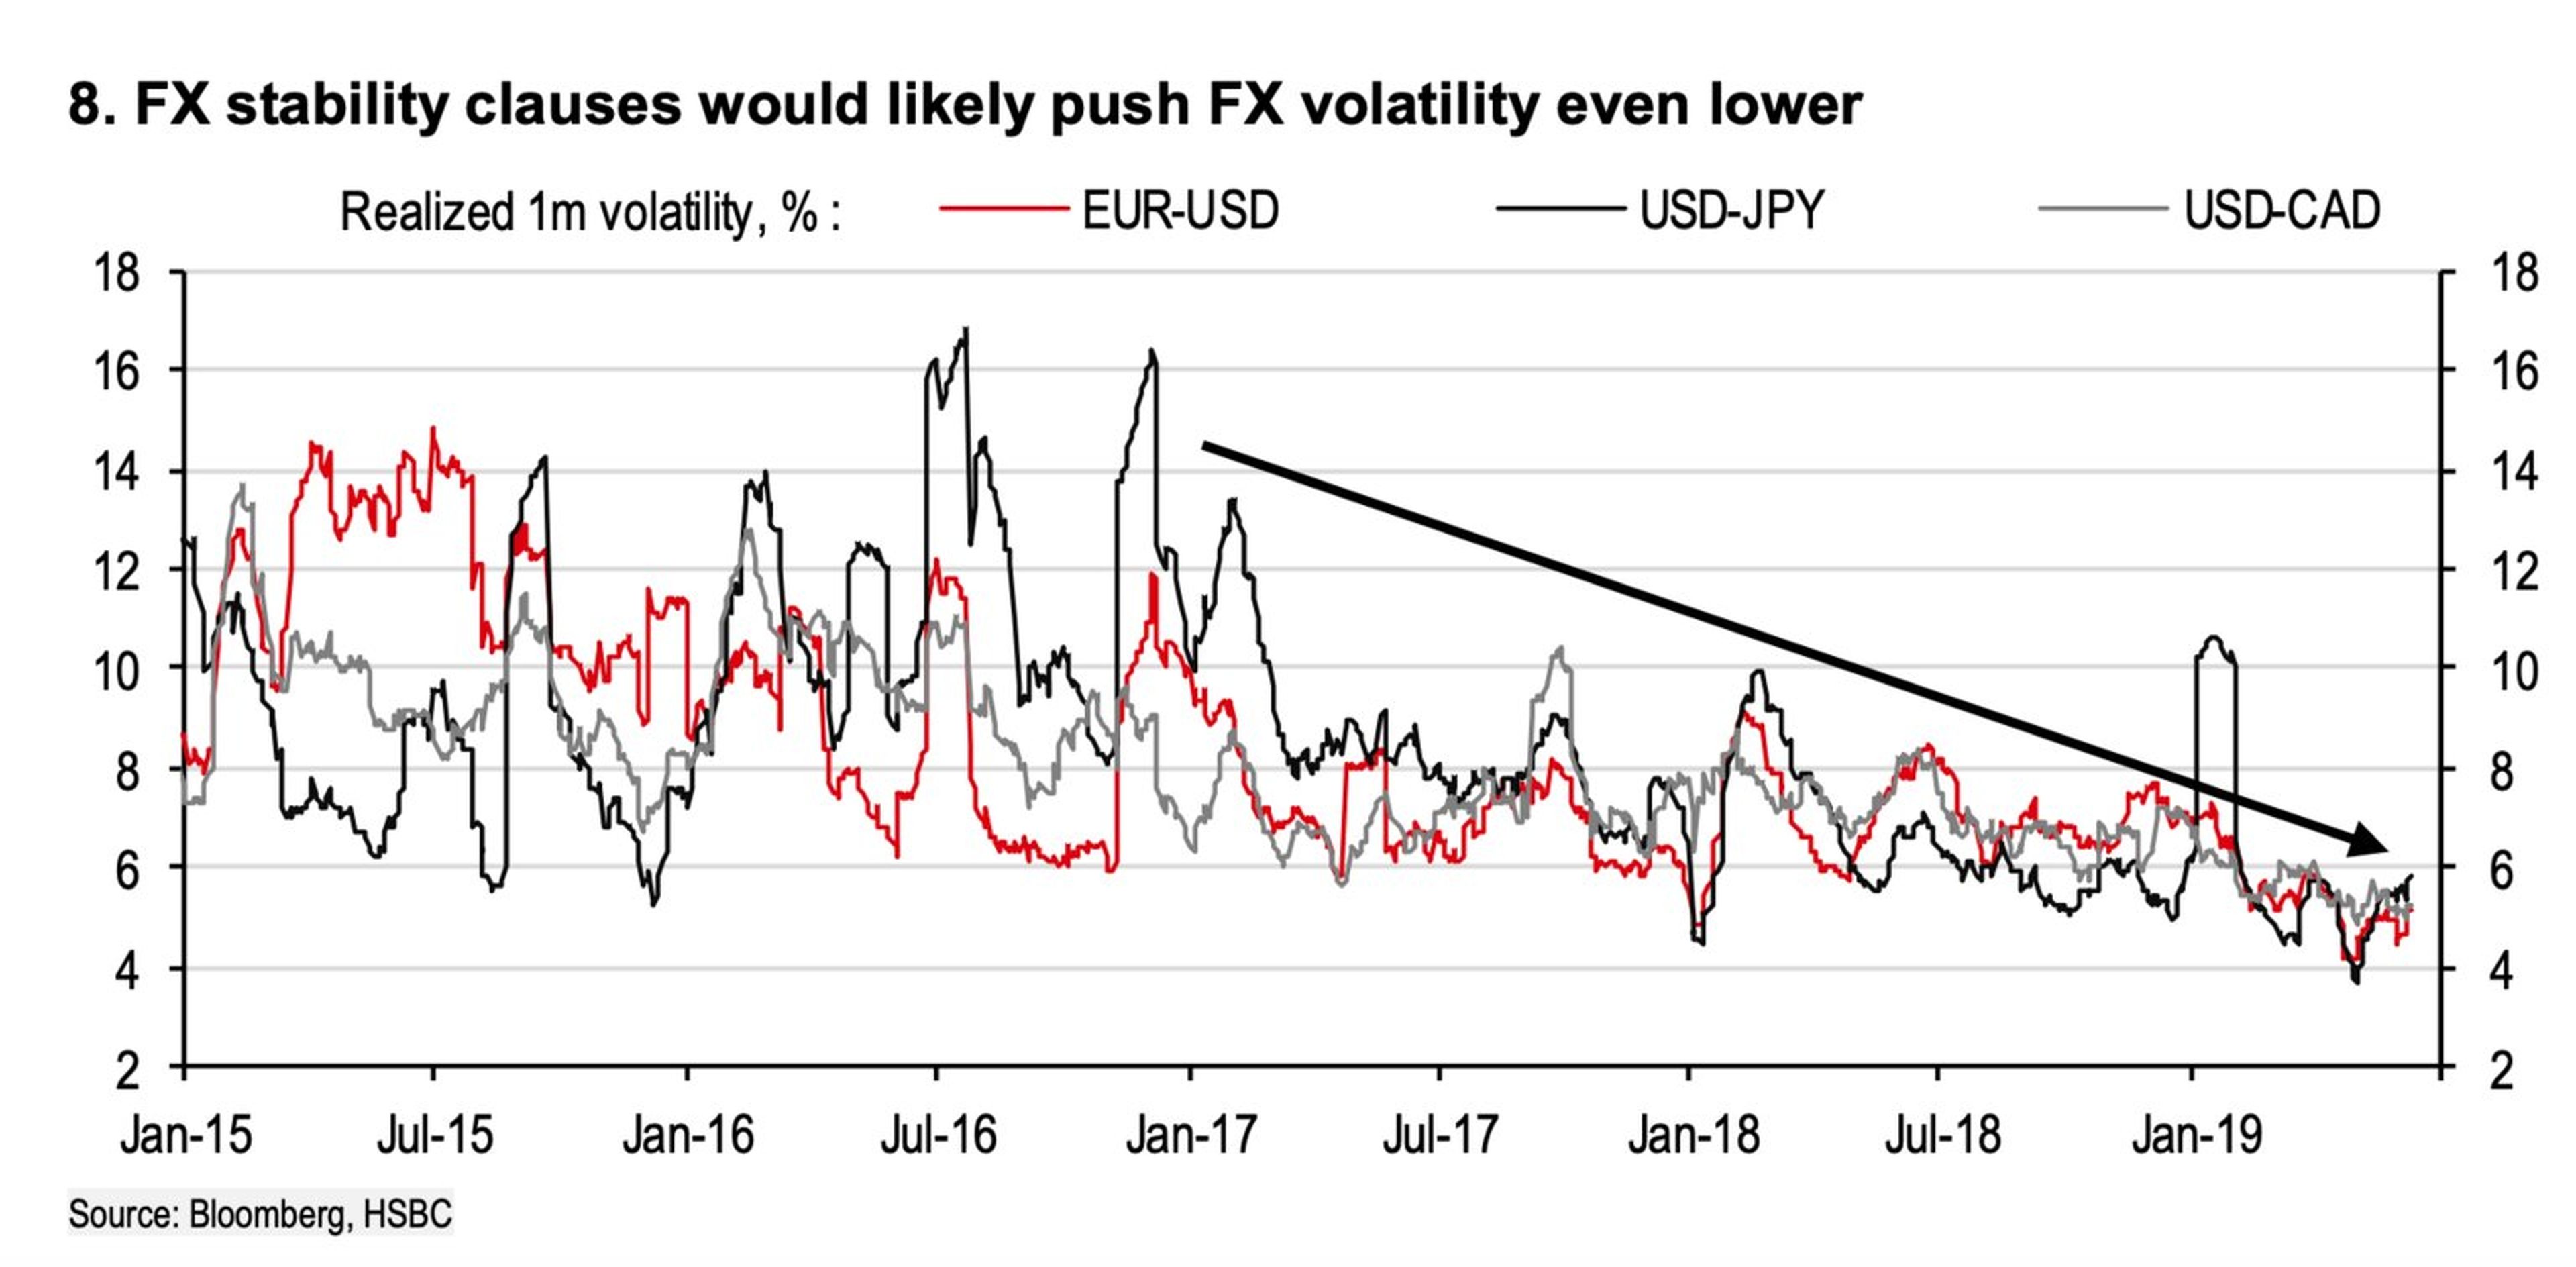 La volatilidad de las monedas extranjeras en comparación con el dólar estadounidense ha ido disminuyendo, y las nuevas normas respaldadas por la administración Trump podrían reducirla aún más.